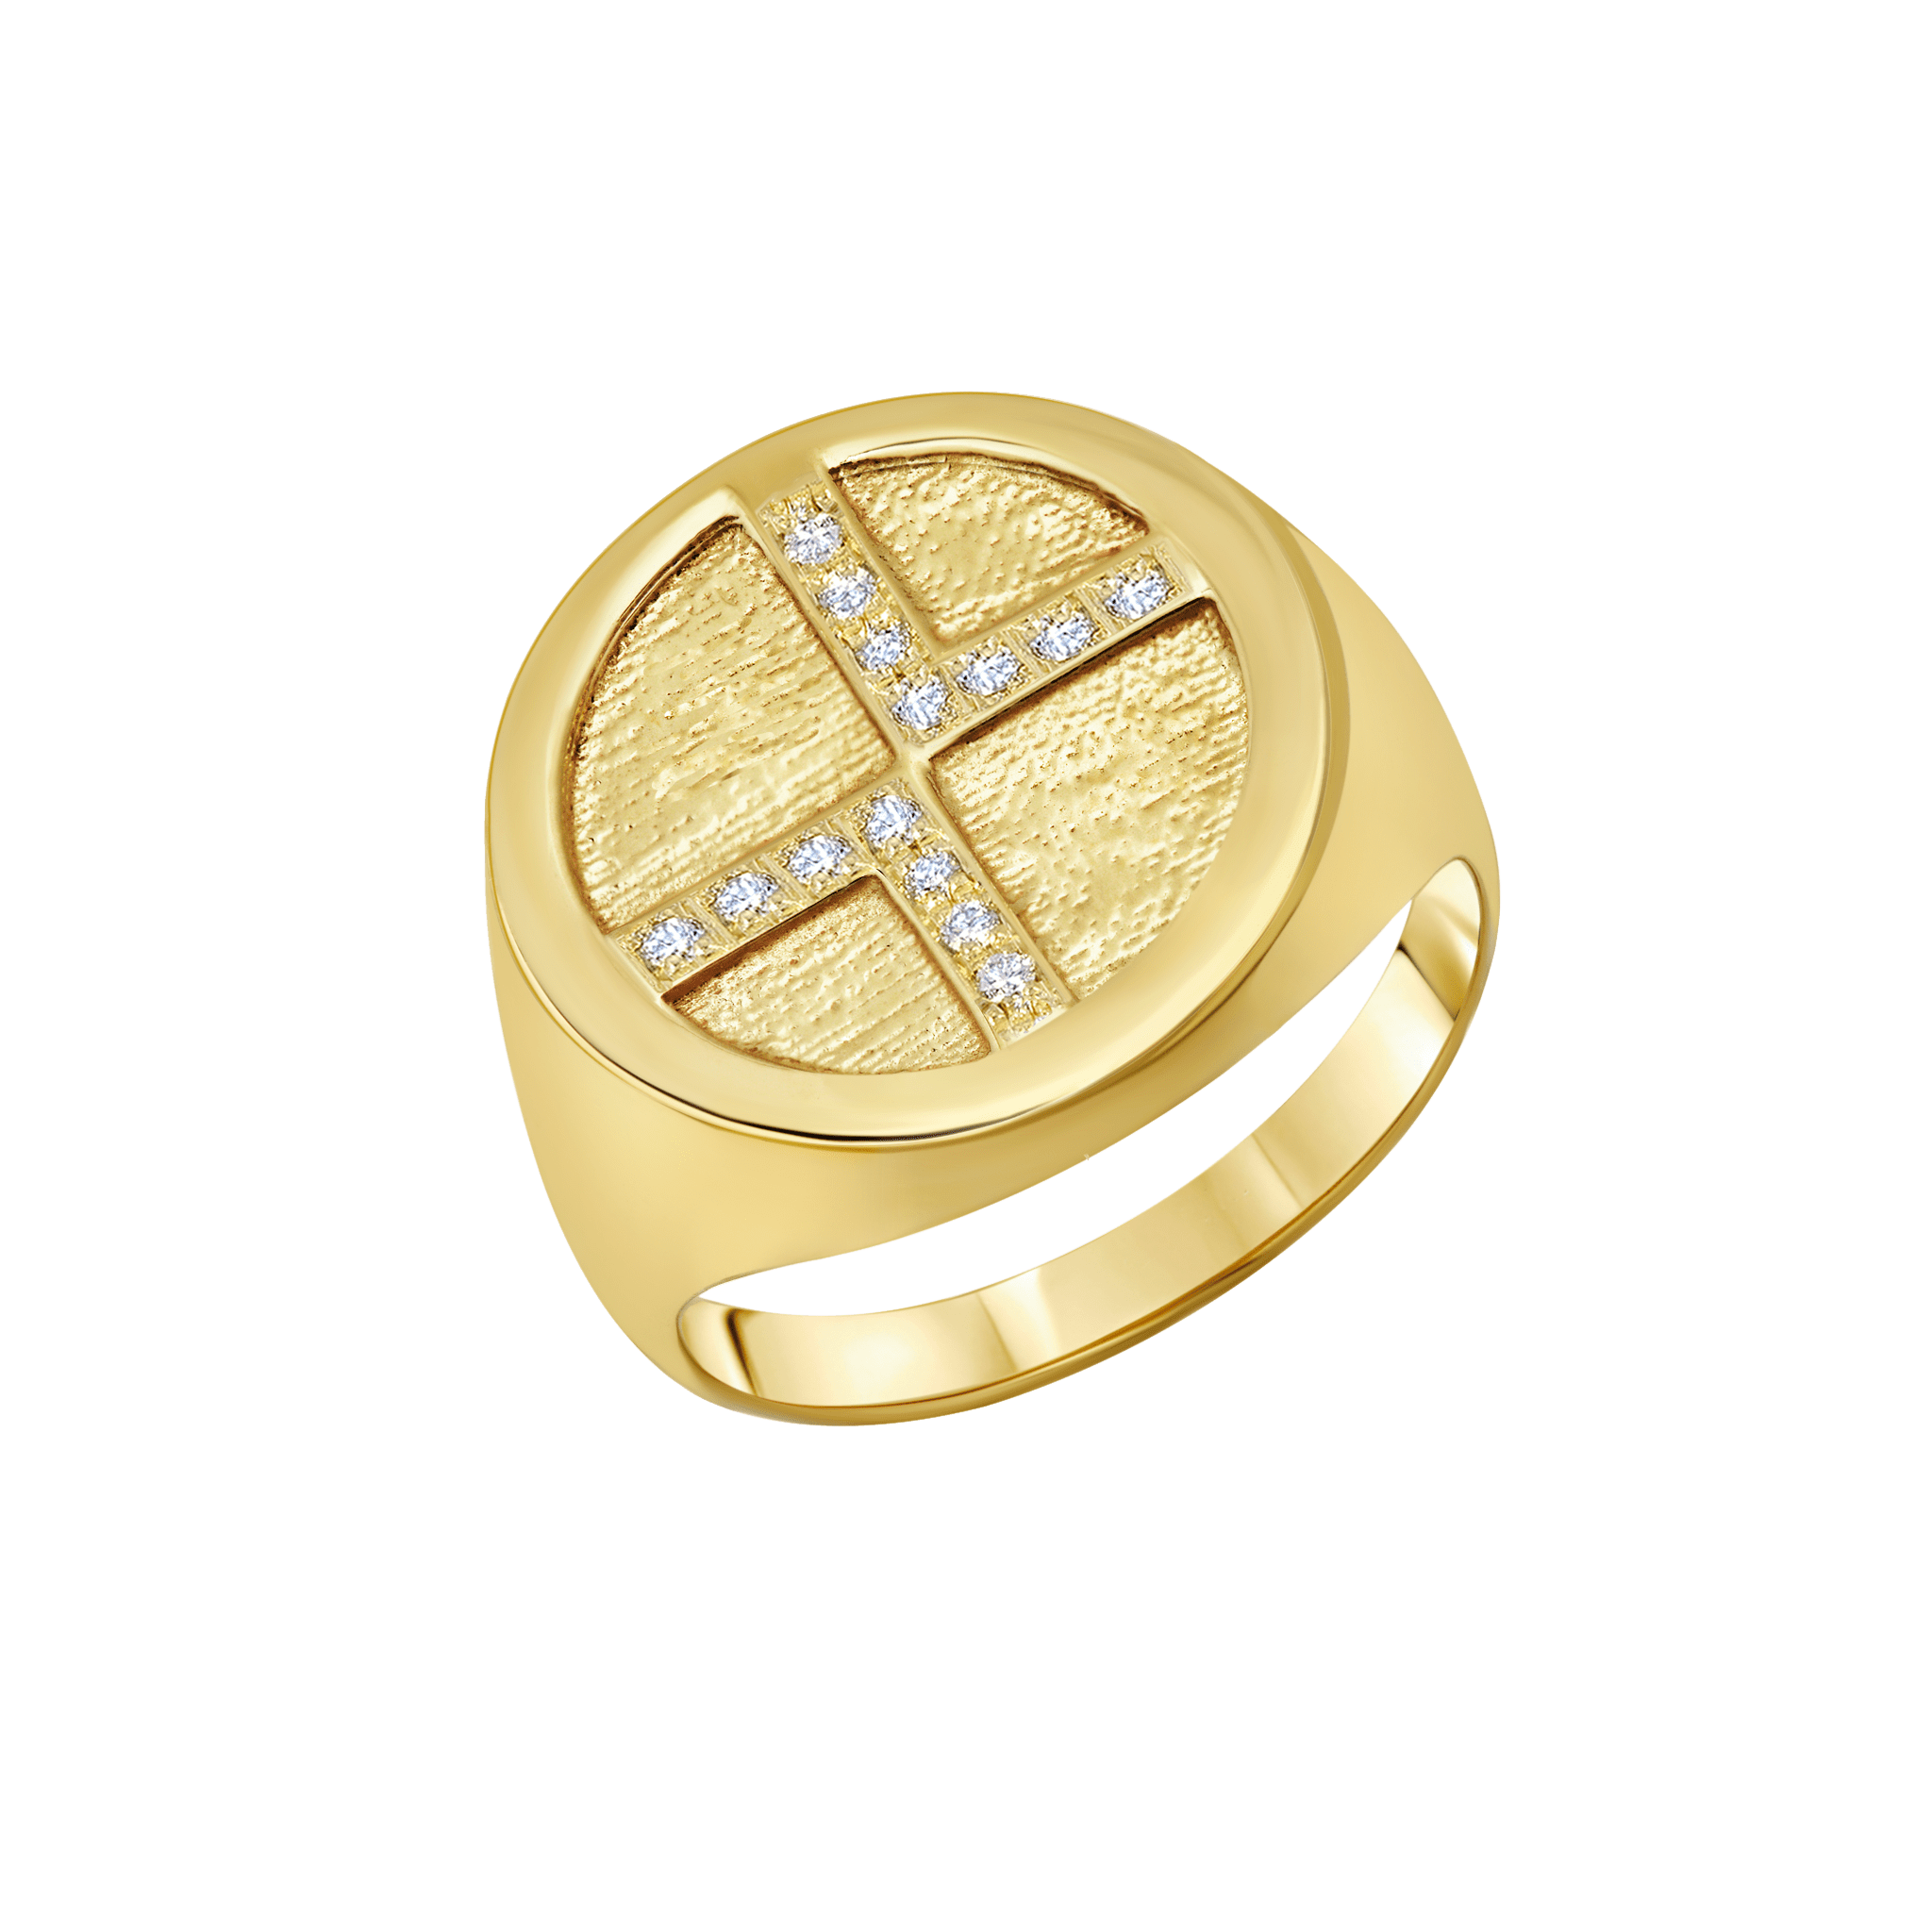 Medallion Rings with Center White Pavé Diamonds - Gabriela Artigas